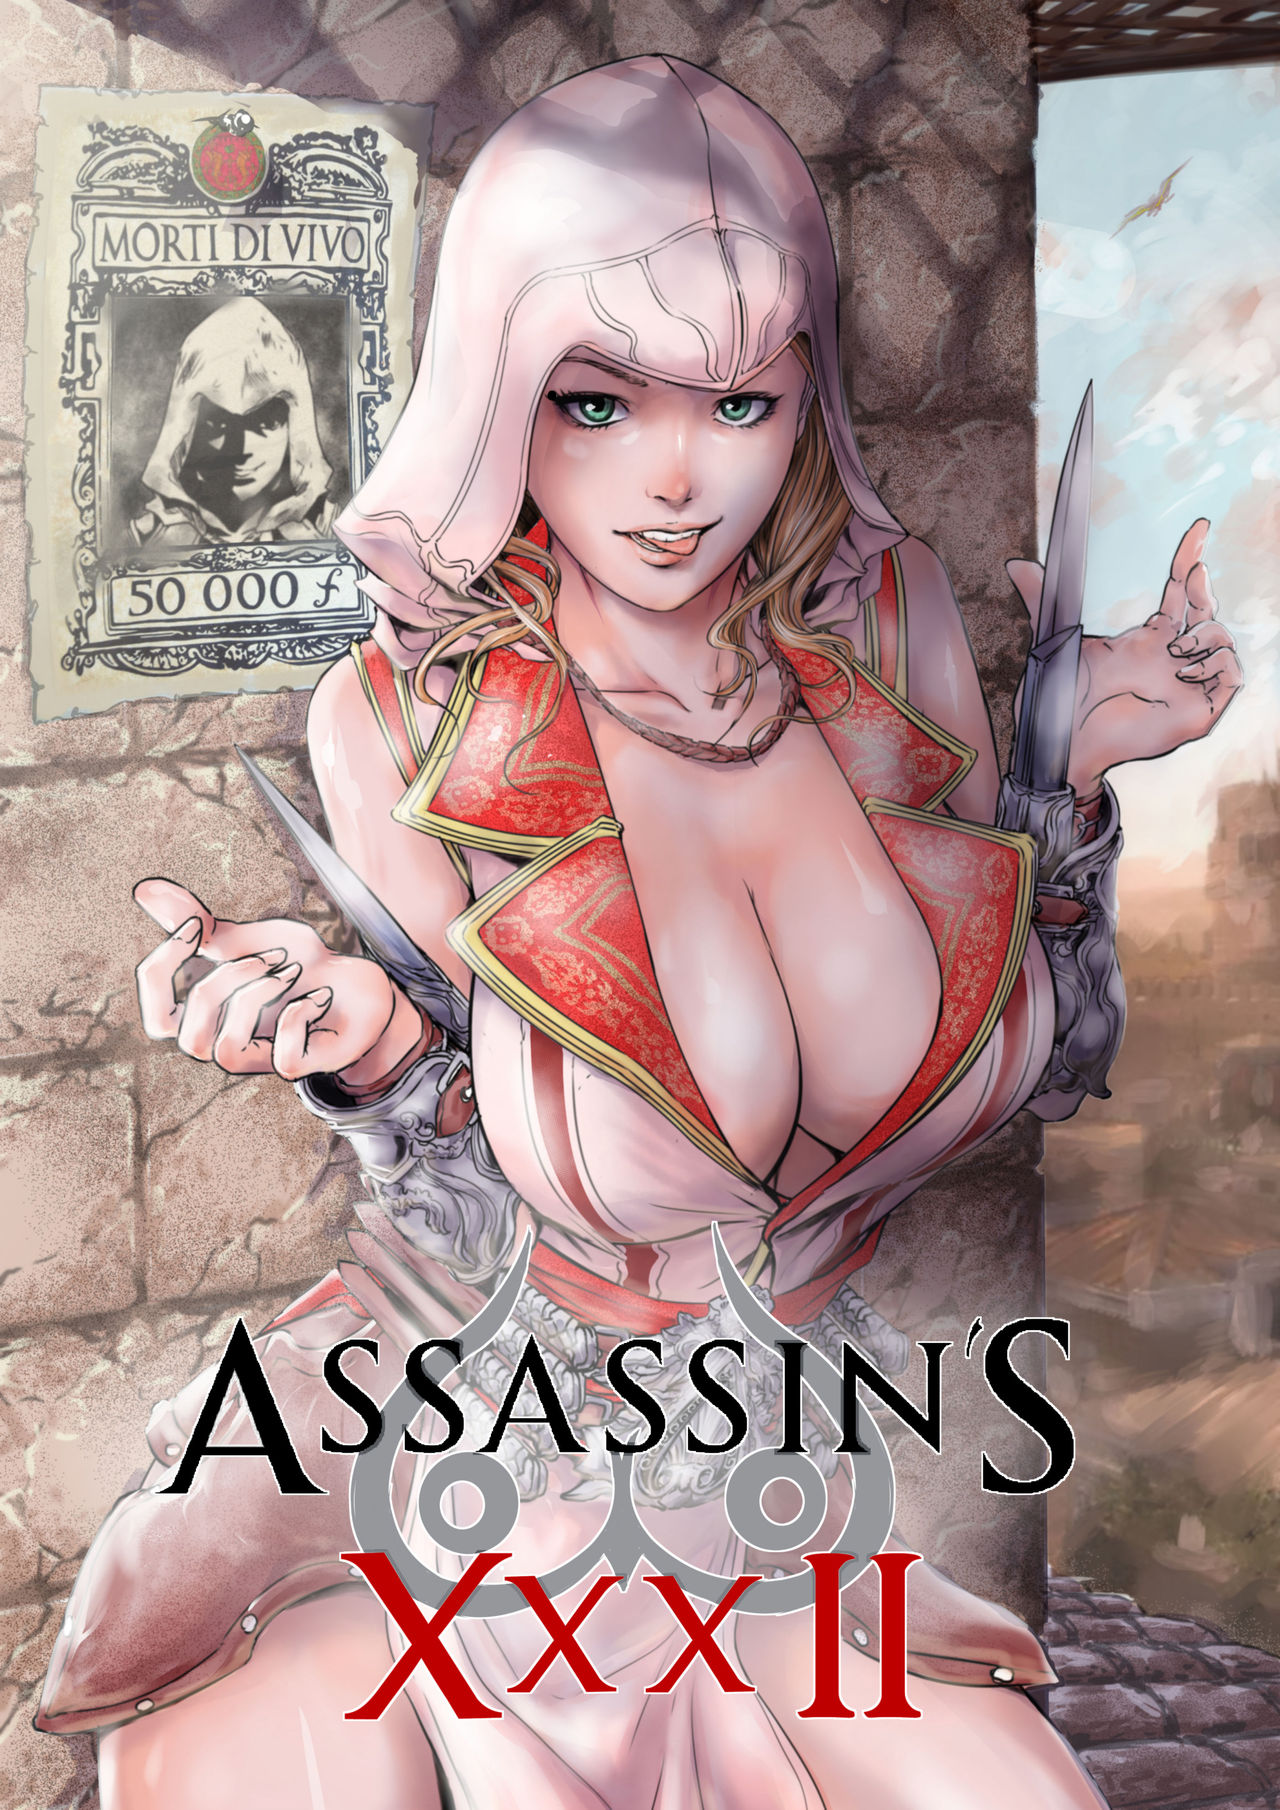 Assassin's creed porn comics